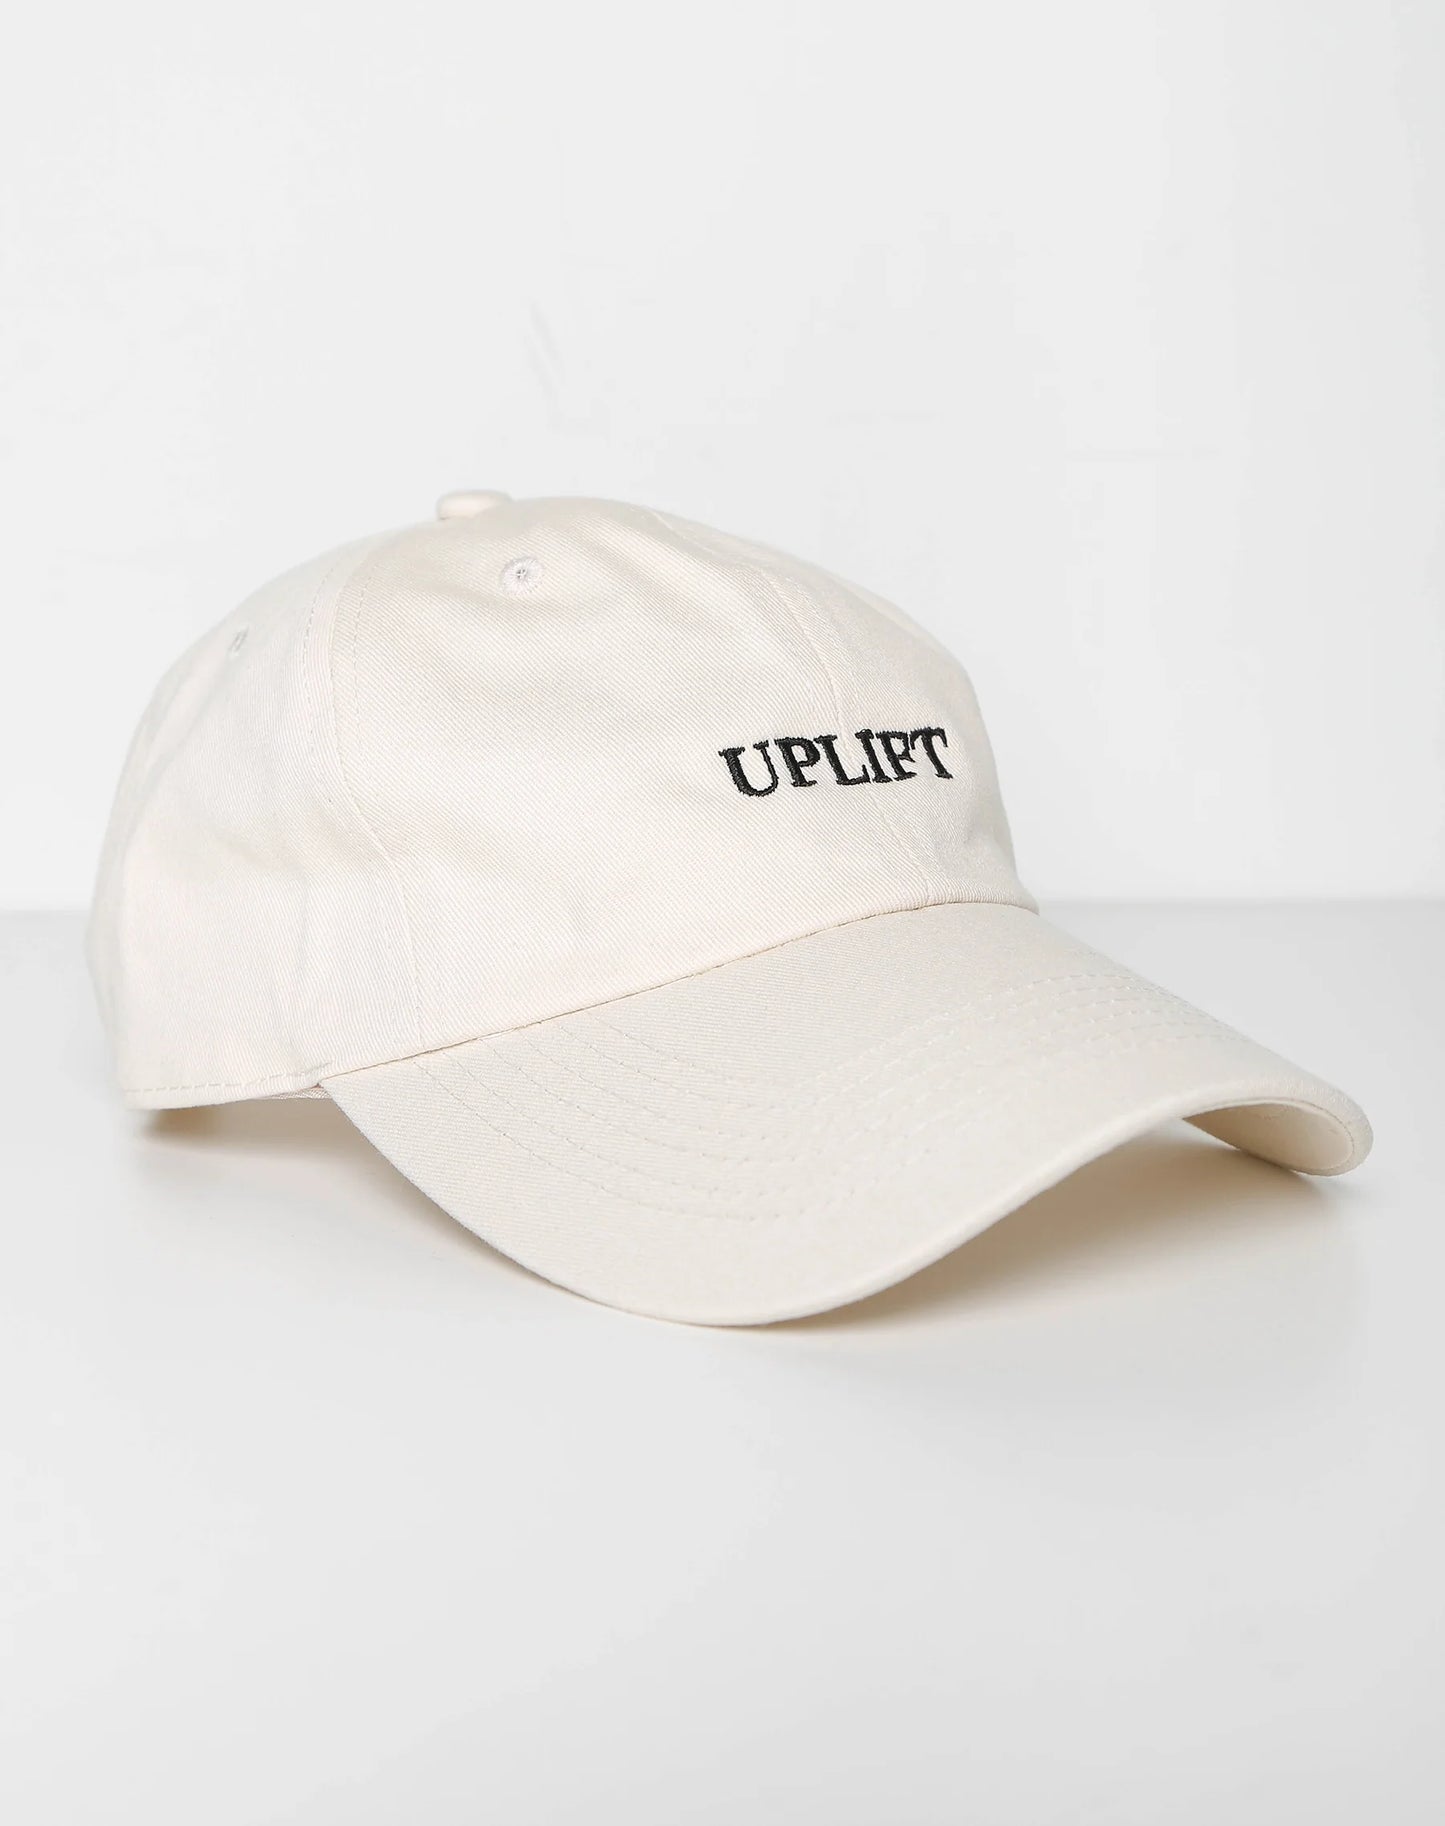 The "UPLIFT" Baseball Cap | Almond Milk Brunette the Label